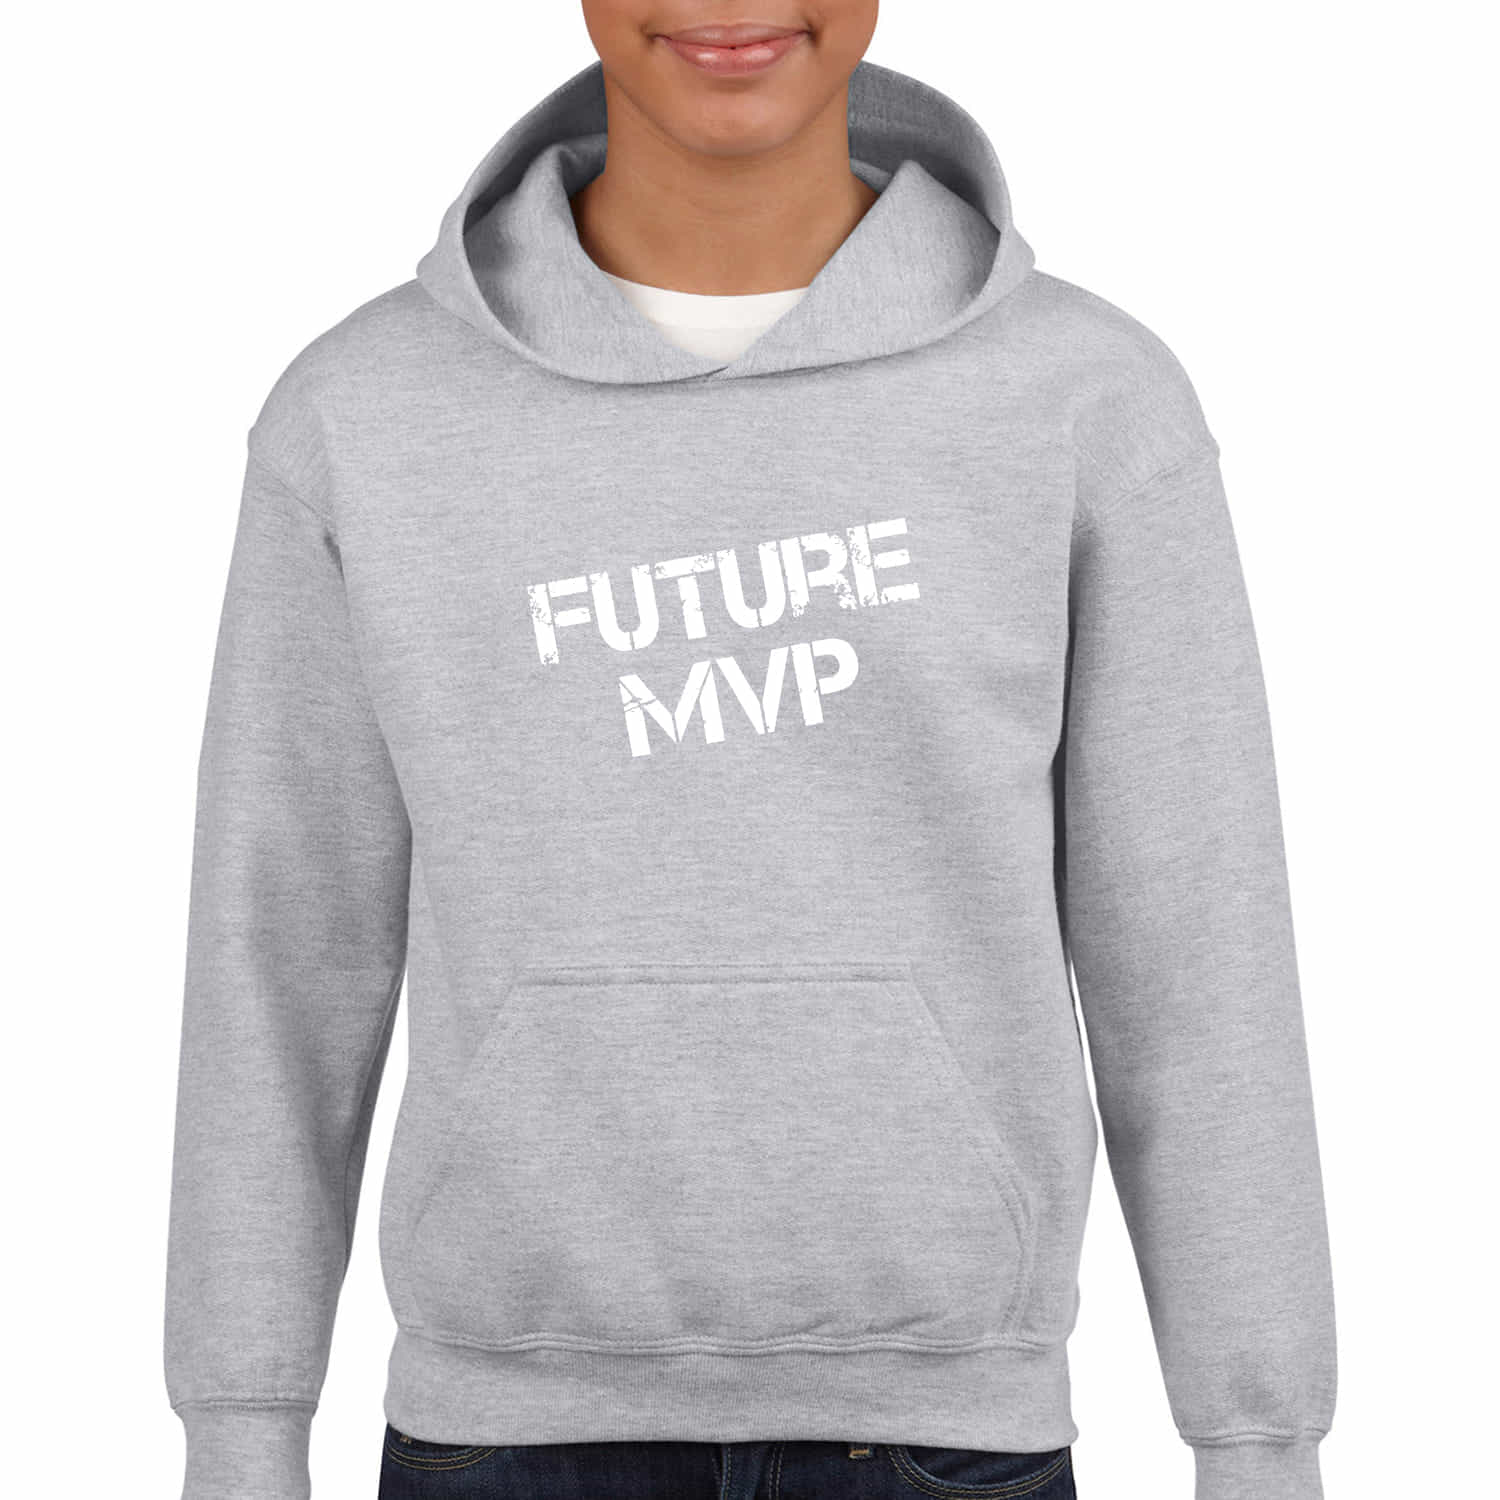 Kinder Hoodie "Future MVP"